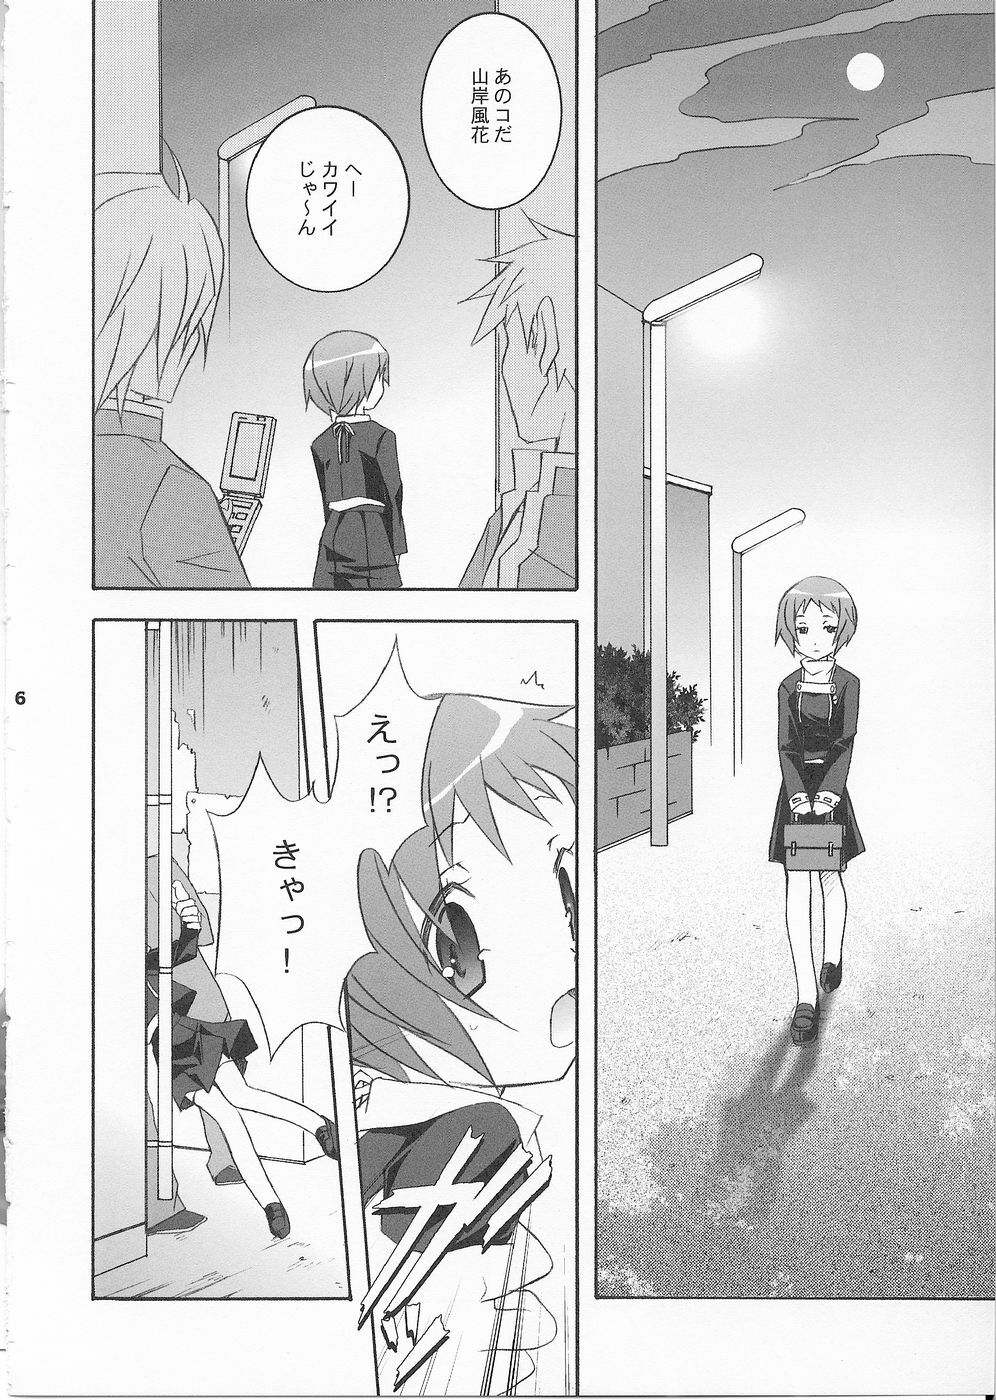 (SC33) [Tenjikuya (Mochizuki Nana)] 3P (Persona 3) page 5 full